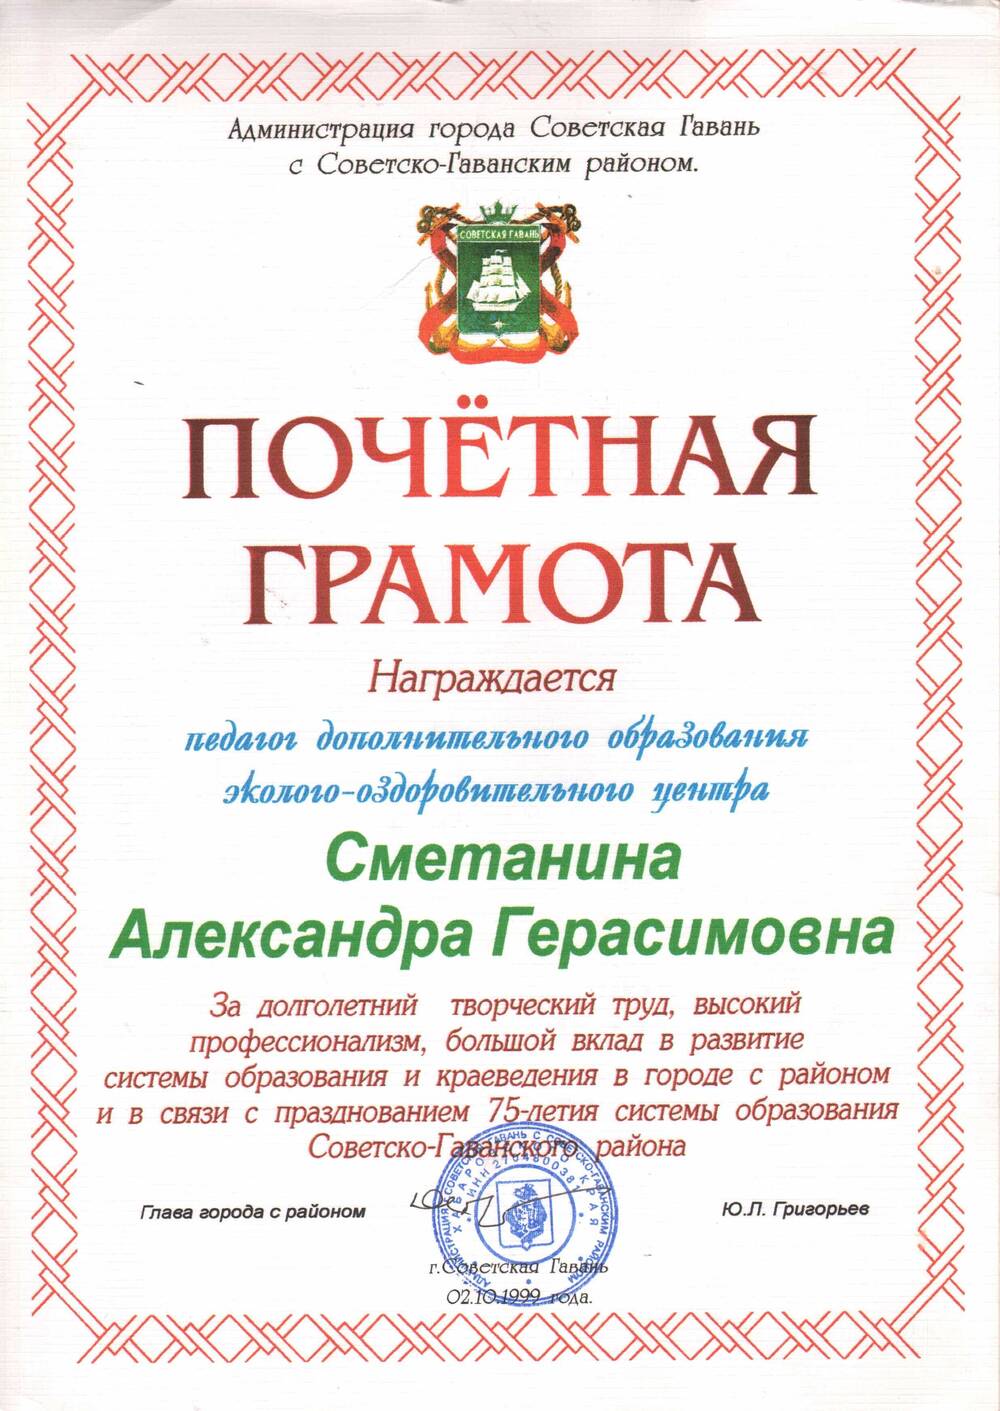 Почётная грамота Сметаниной А.Г. в связи с празднованием 75-летия системы образования Советско-Гаванского района